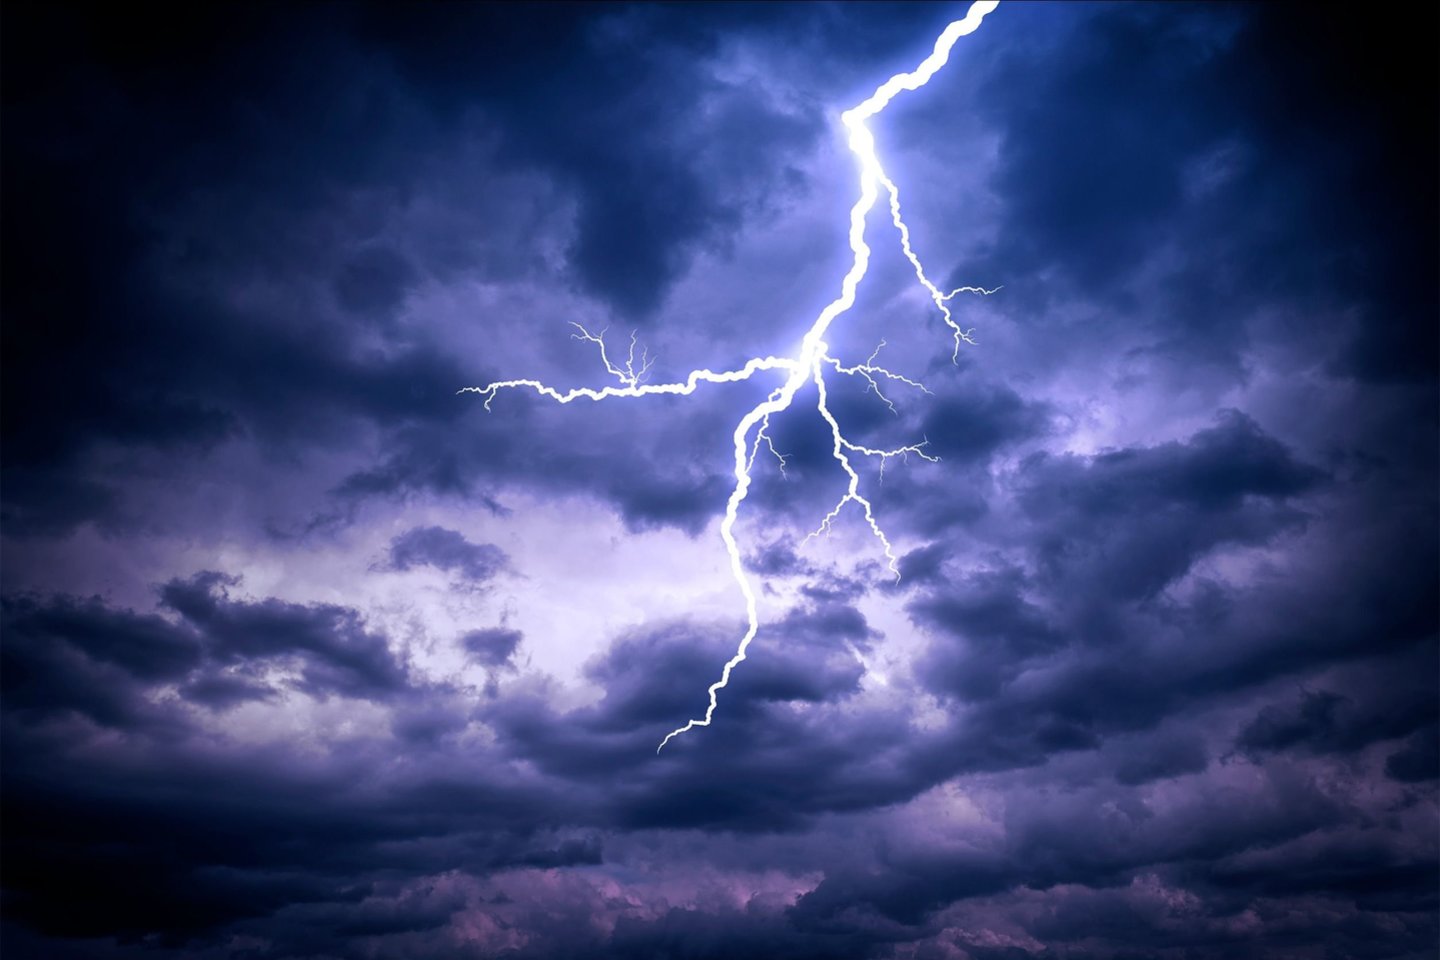 Žaibų išlydžiai yra vienas pavojingiausių meteorologinių reiškinių, kiekvienais metais pridarantis nemenkų nuostolių. Didelė dalis jų yra susiję su įvairios elektroninės įrangos sugadinimu.<br>123rf iliustr.